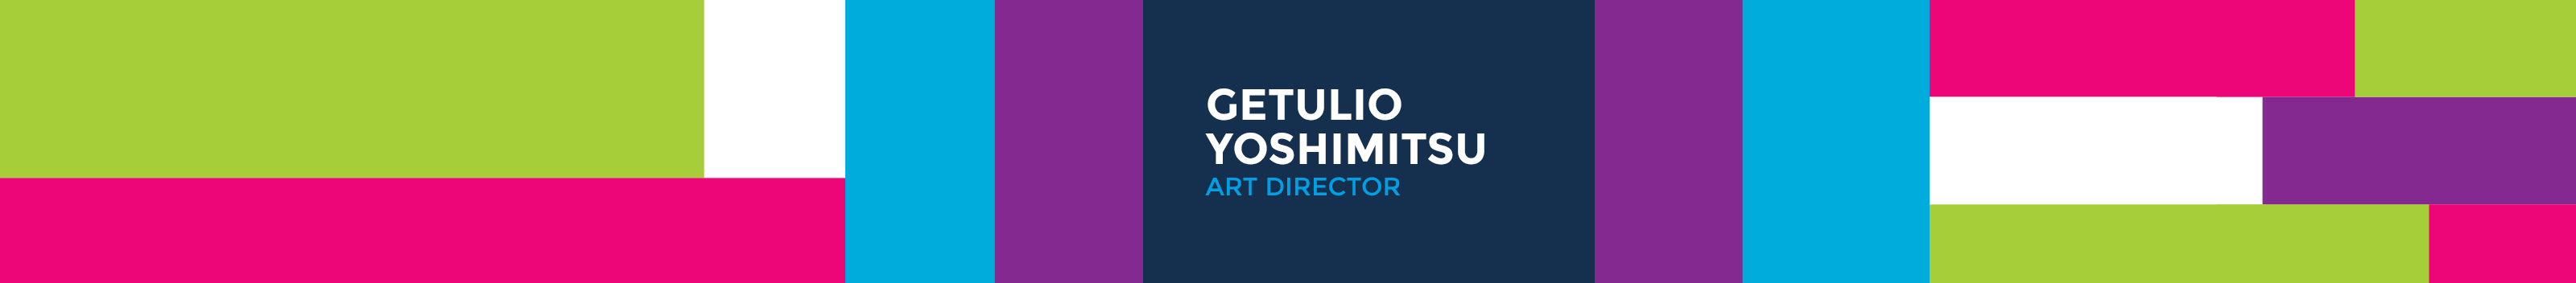 Getulio Yoshimitsu profil başlığı